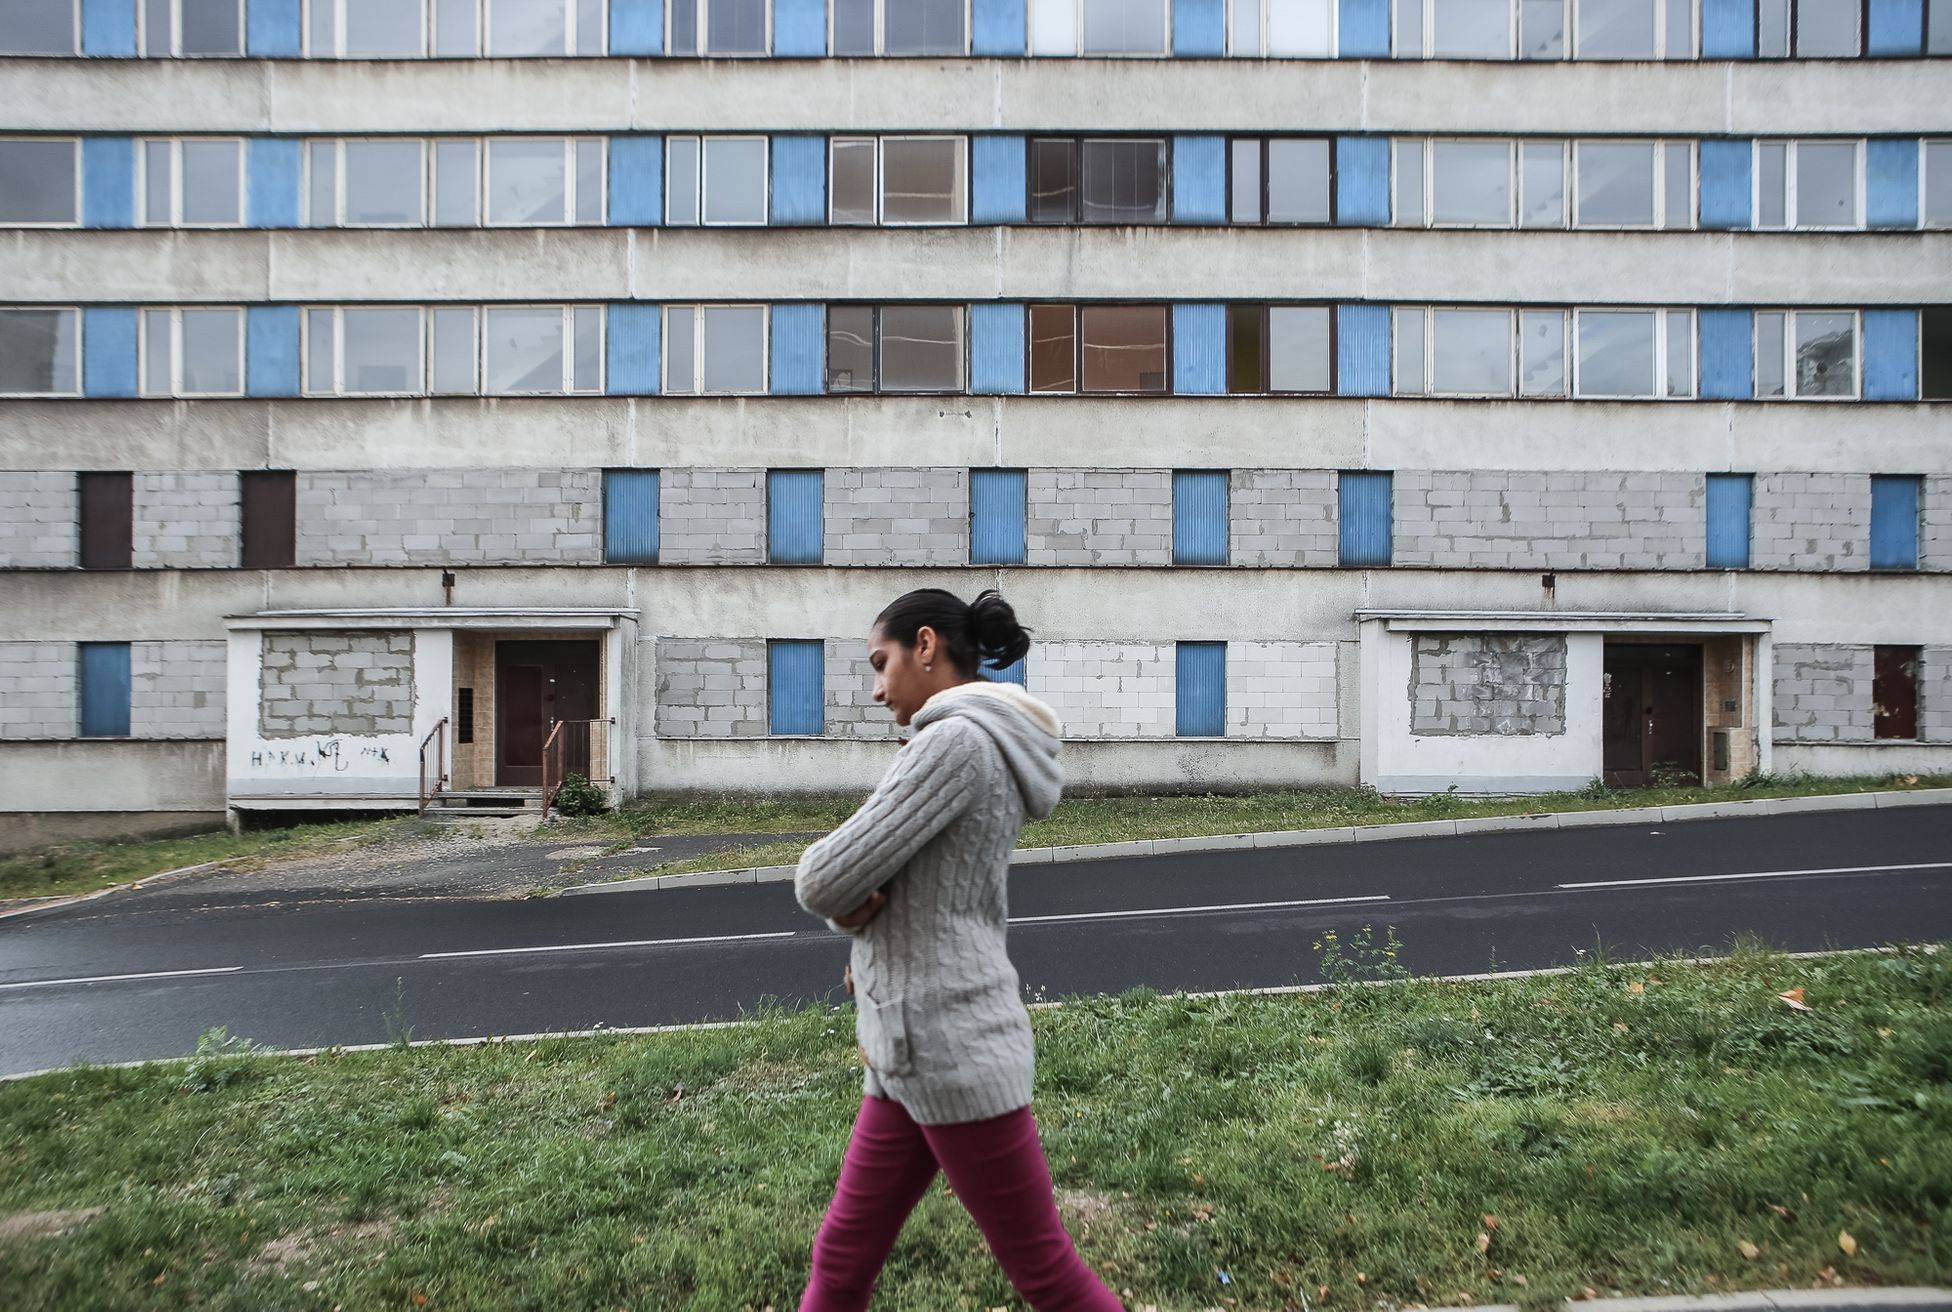 Sídliště Janov, Litvínov, 22.10.2018 - (polo)opuštěné a vybydlené domy, vytlučená okna